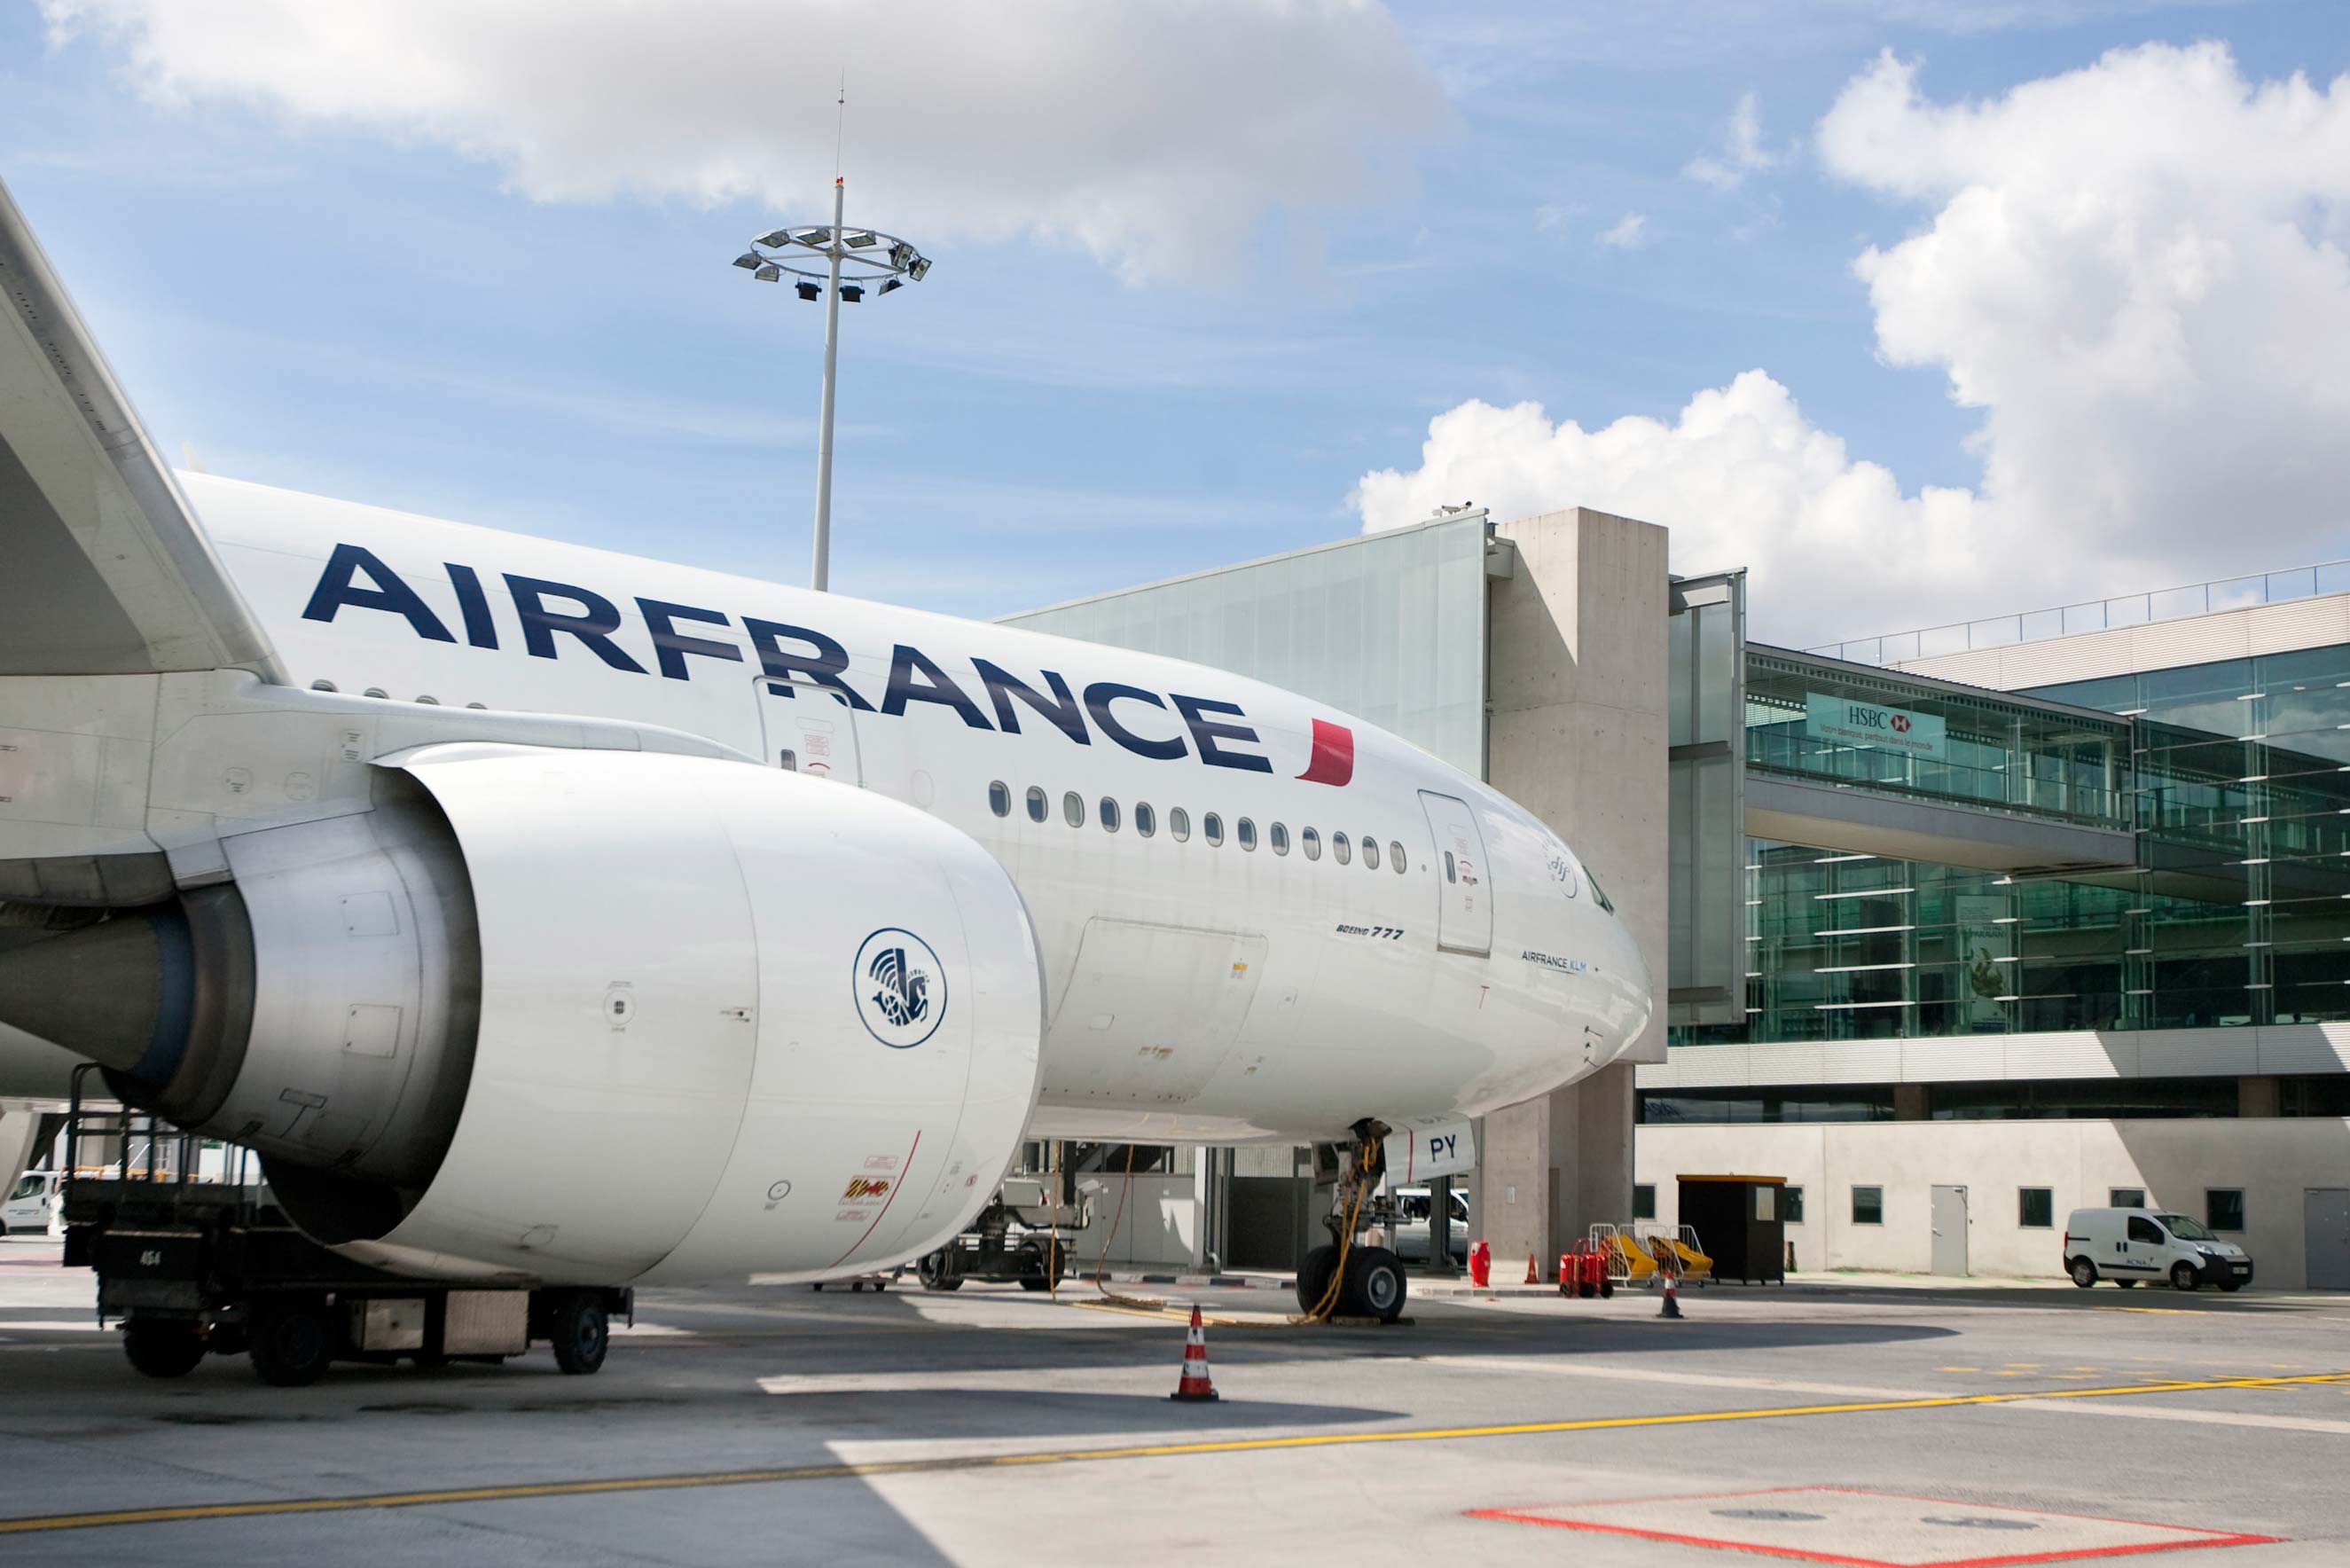 B777 Air France